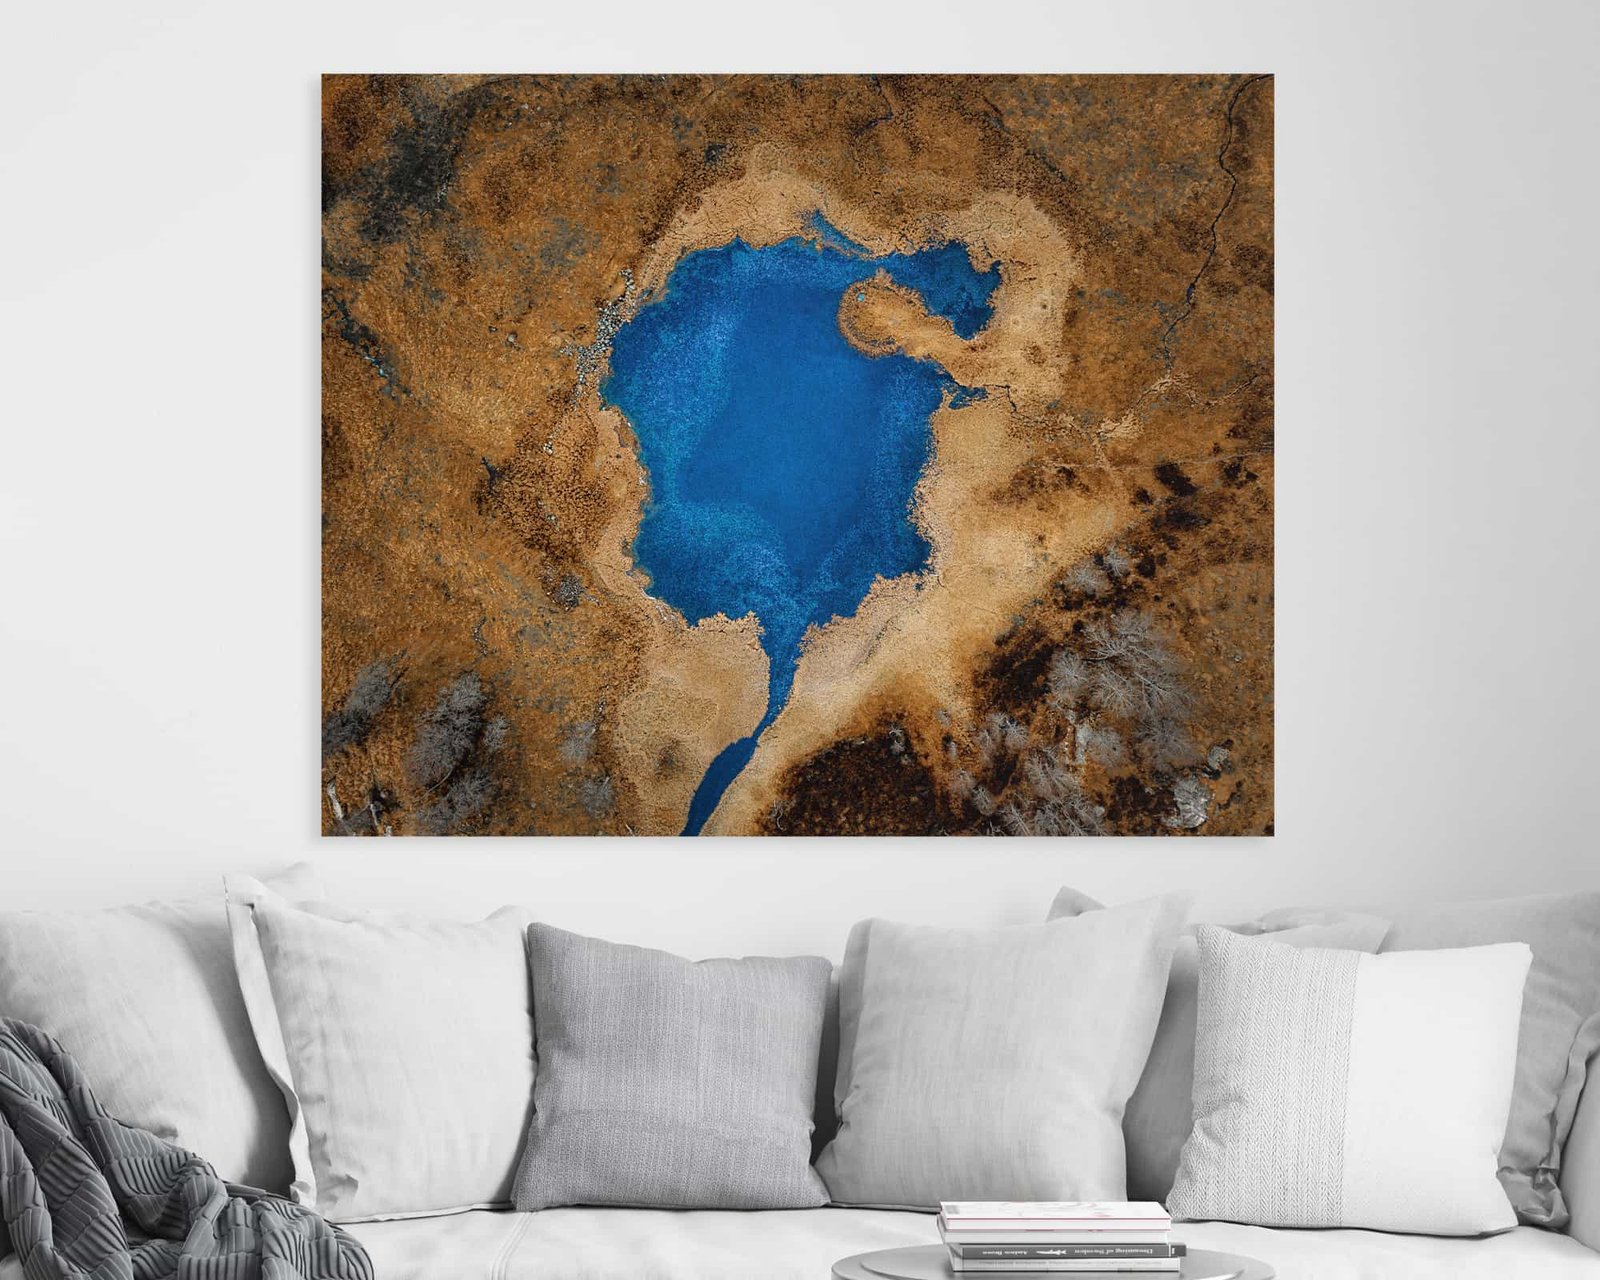 Fali képként elérhető fotó, mely a levegőből készült egy kék tóról egy sárgás földterület közepén